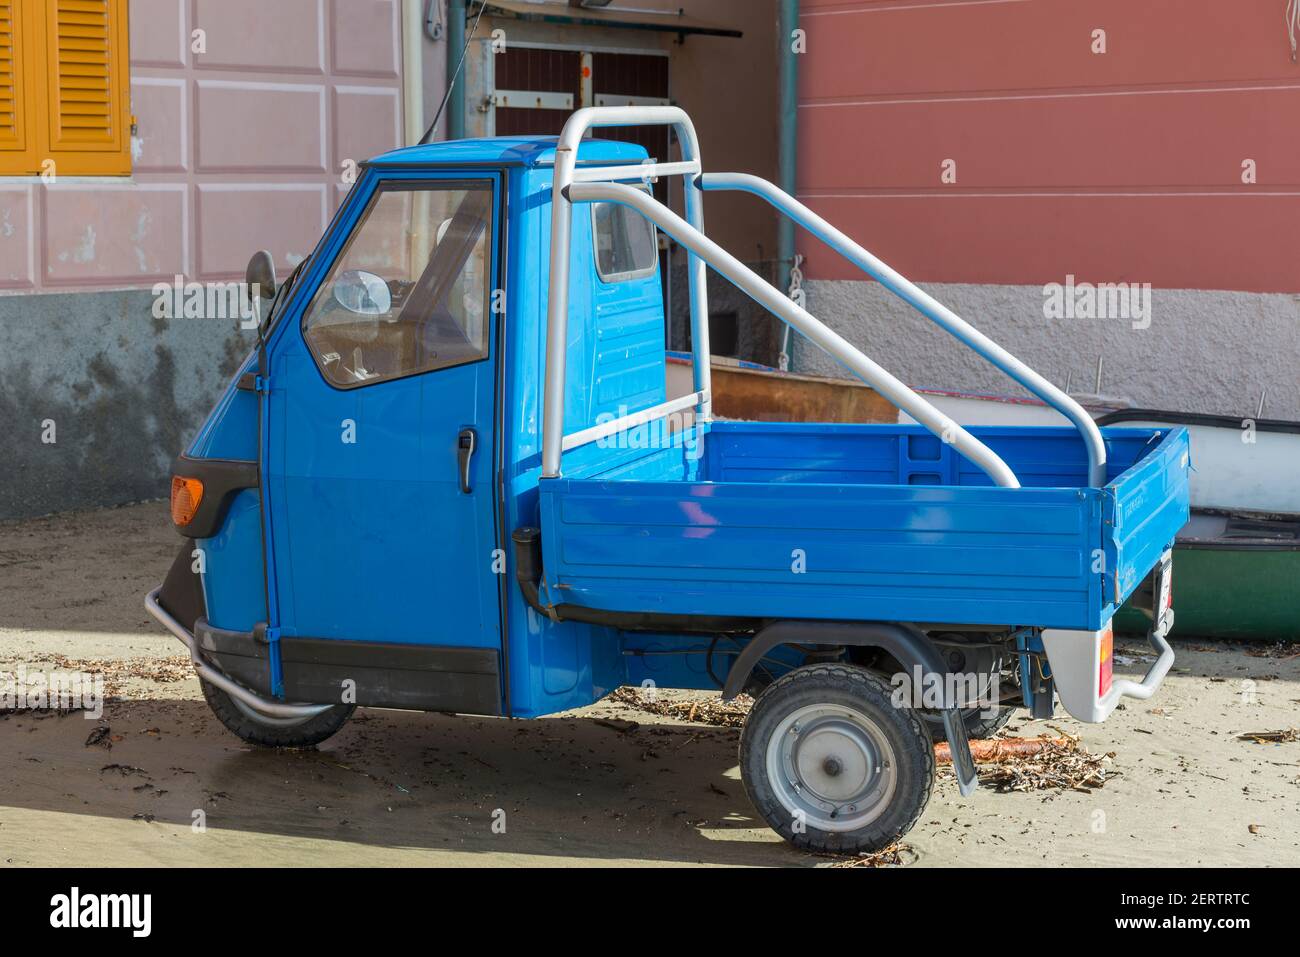 Drei Räder Auto in Italien Stockfotografie - Alamy